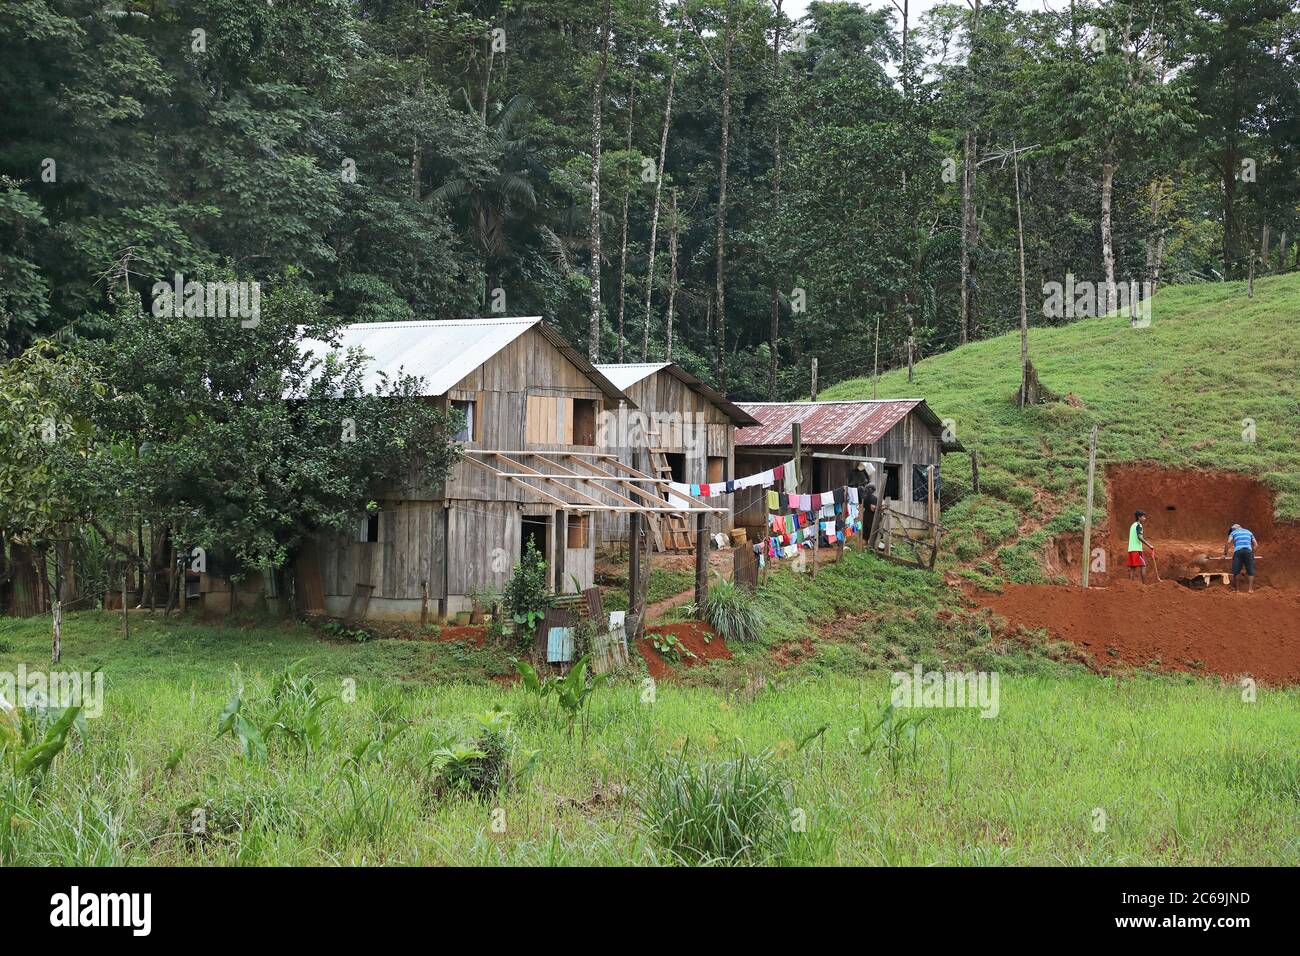 Casas de la población rural, Costa Rica, Boca tapada Foto de stock